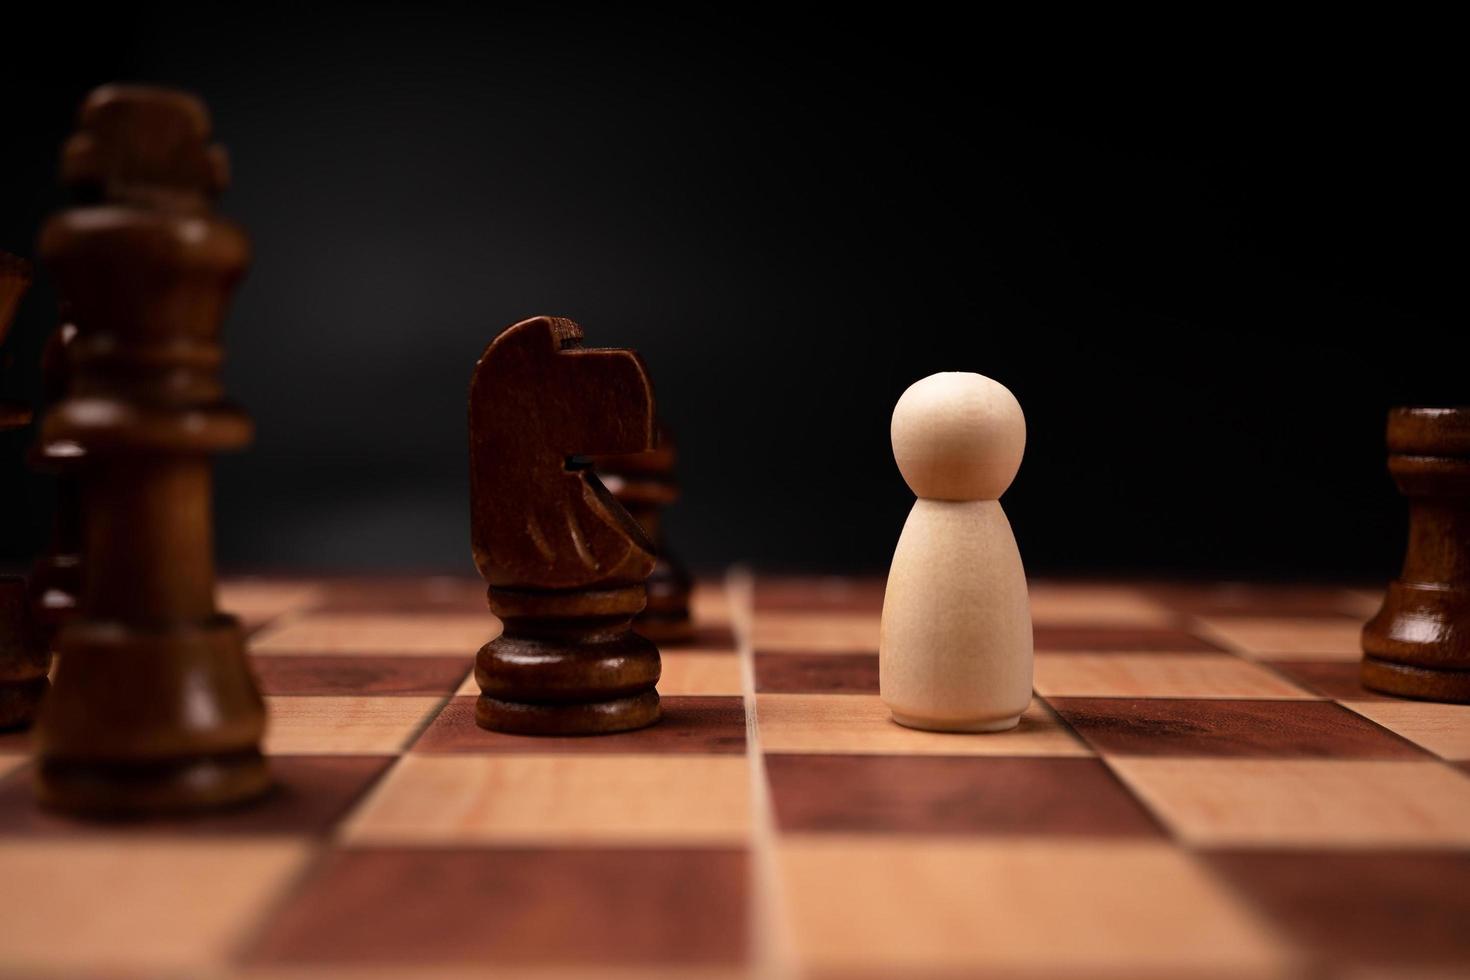 nuovo attività commerciale capo confronto con re scacchi è un' sfida per nuovo attività commerciale giocatore, strategia e visione è chiave successo. concetto di concorrenza e comando foto